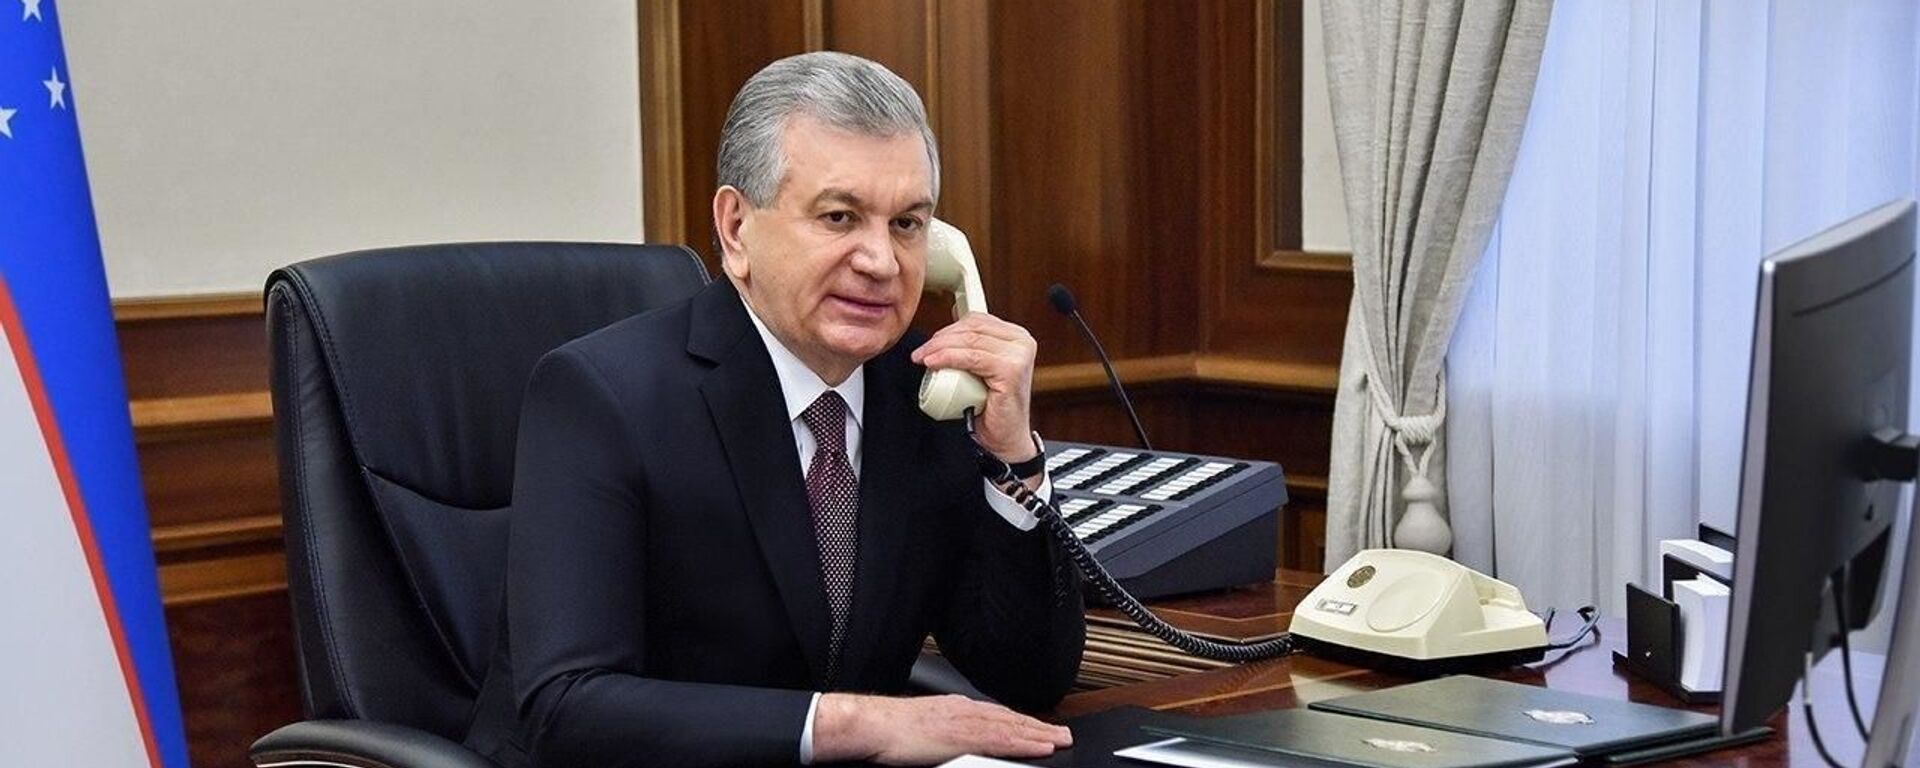 Prezident Shavkat Mirziyoyev razgovarivayet po telefonu - Sputnik O‘zbekiston, 1920, 13.05.2021